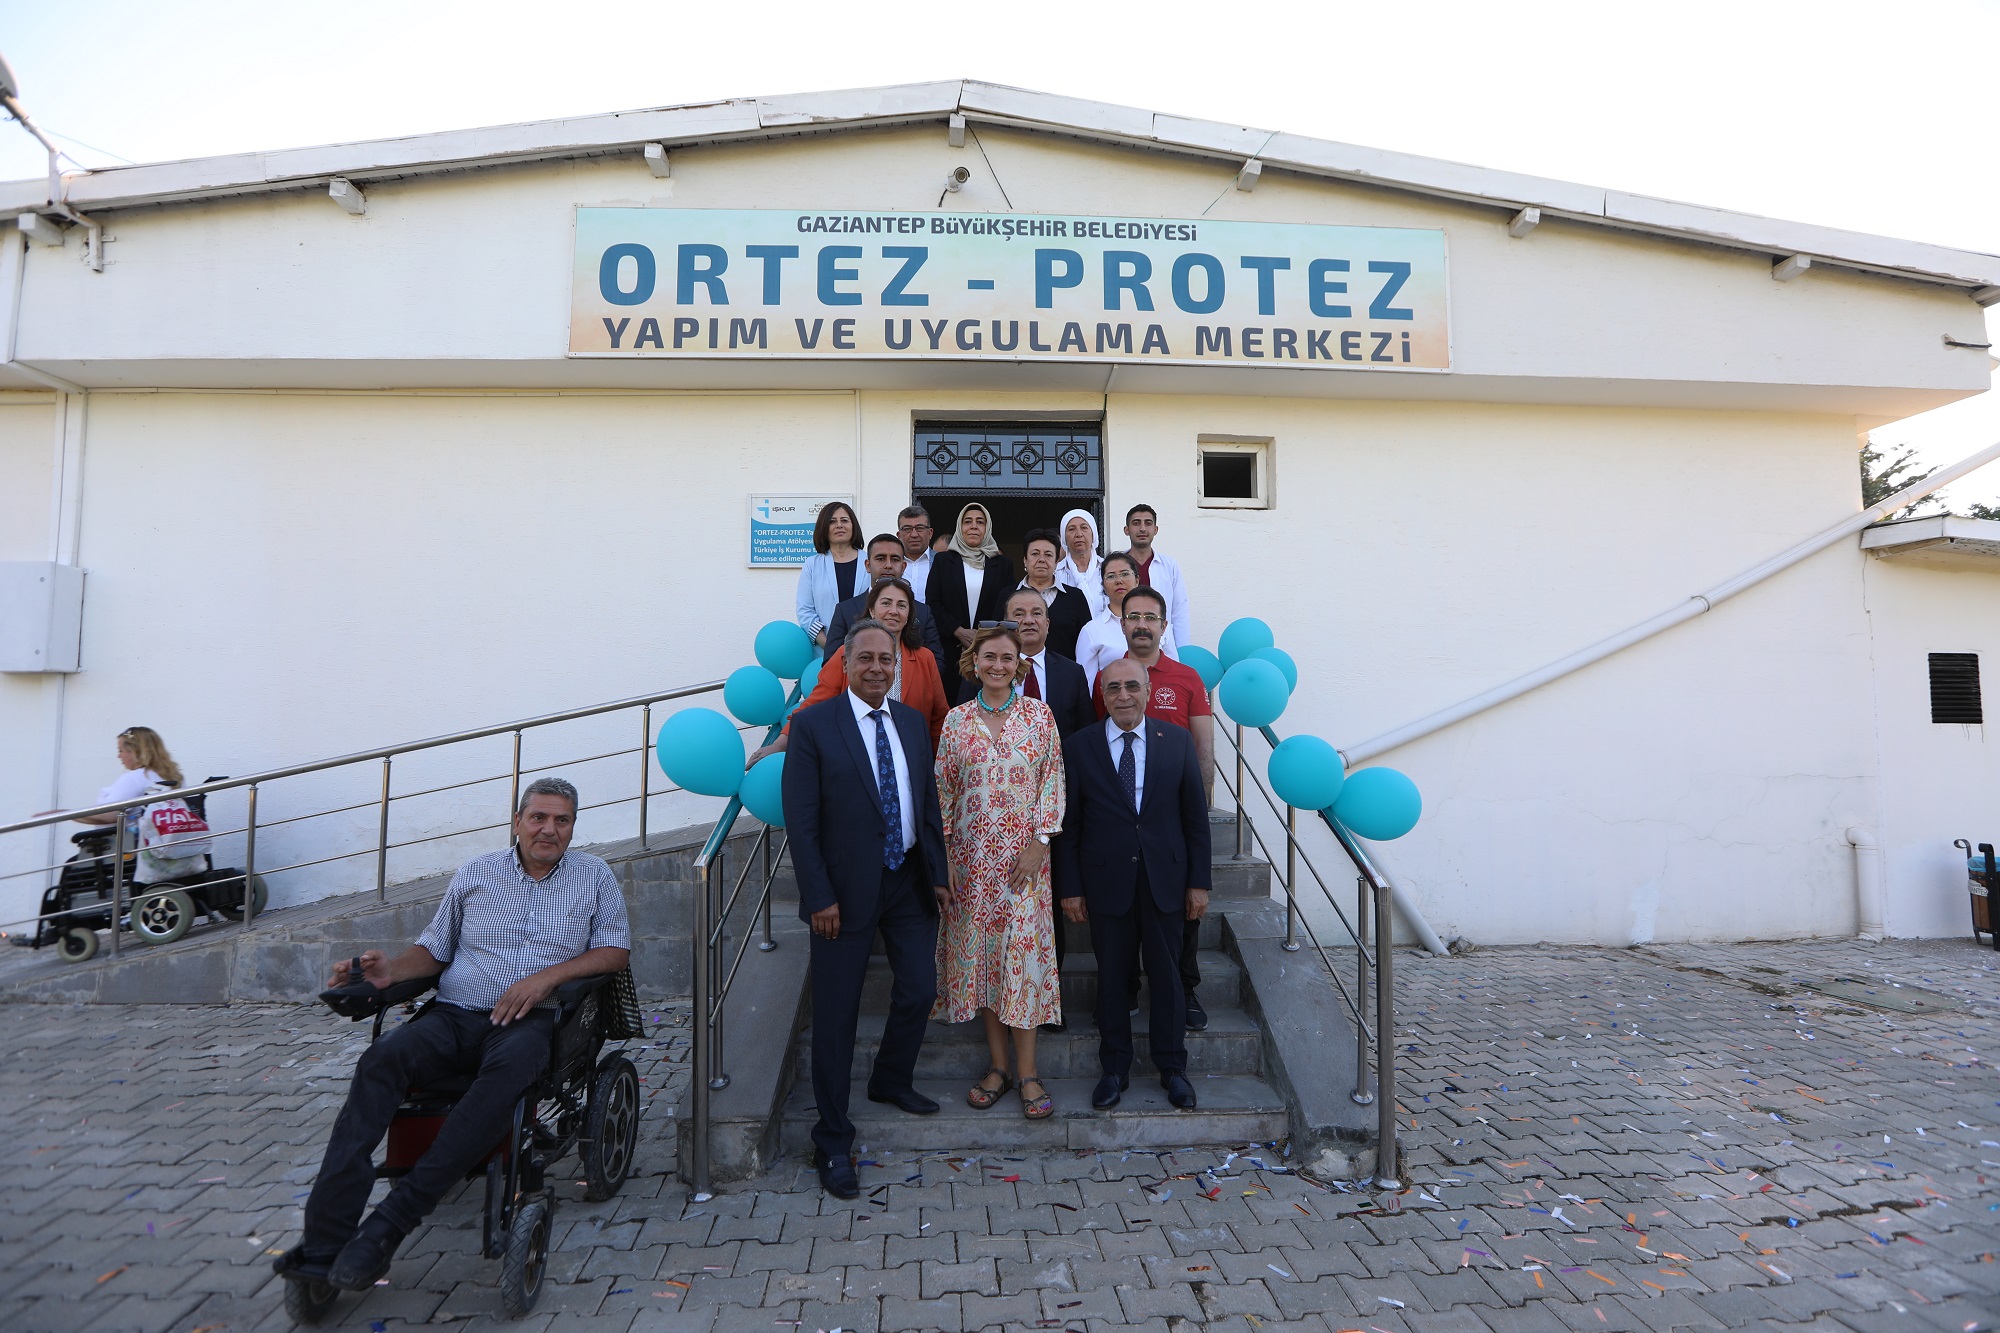 Gaziantep Büyükşehir’in Ortez-Protez Yapım ve Uygulama Merkezi Açıldı